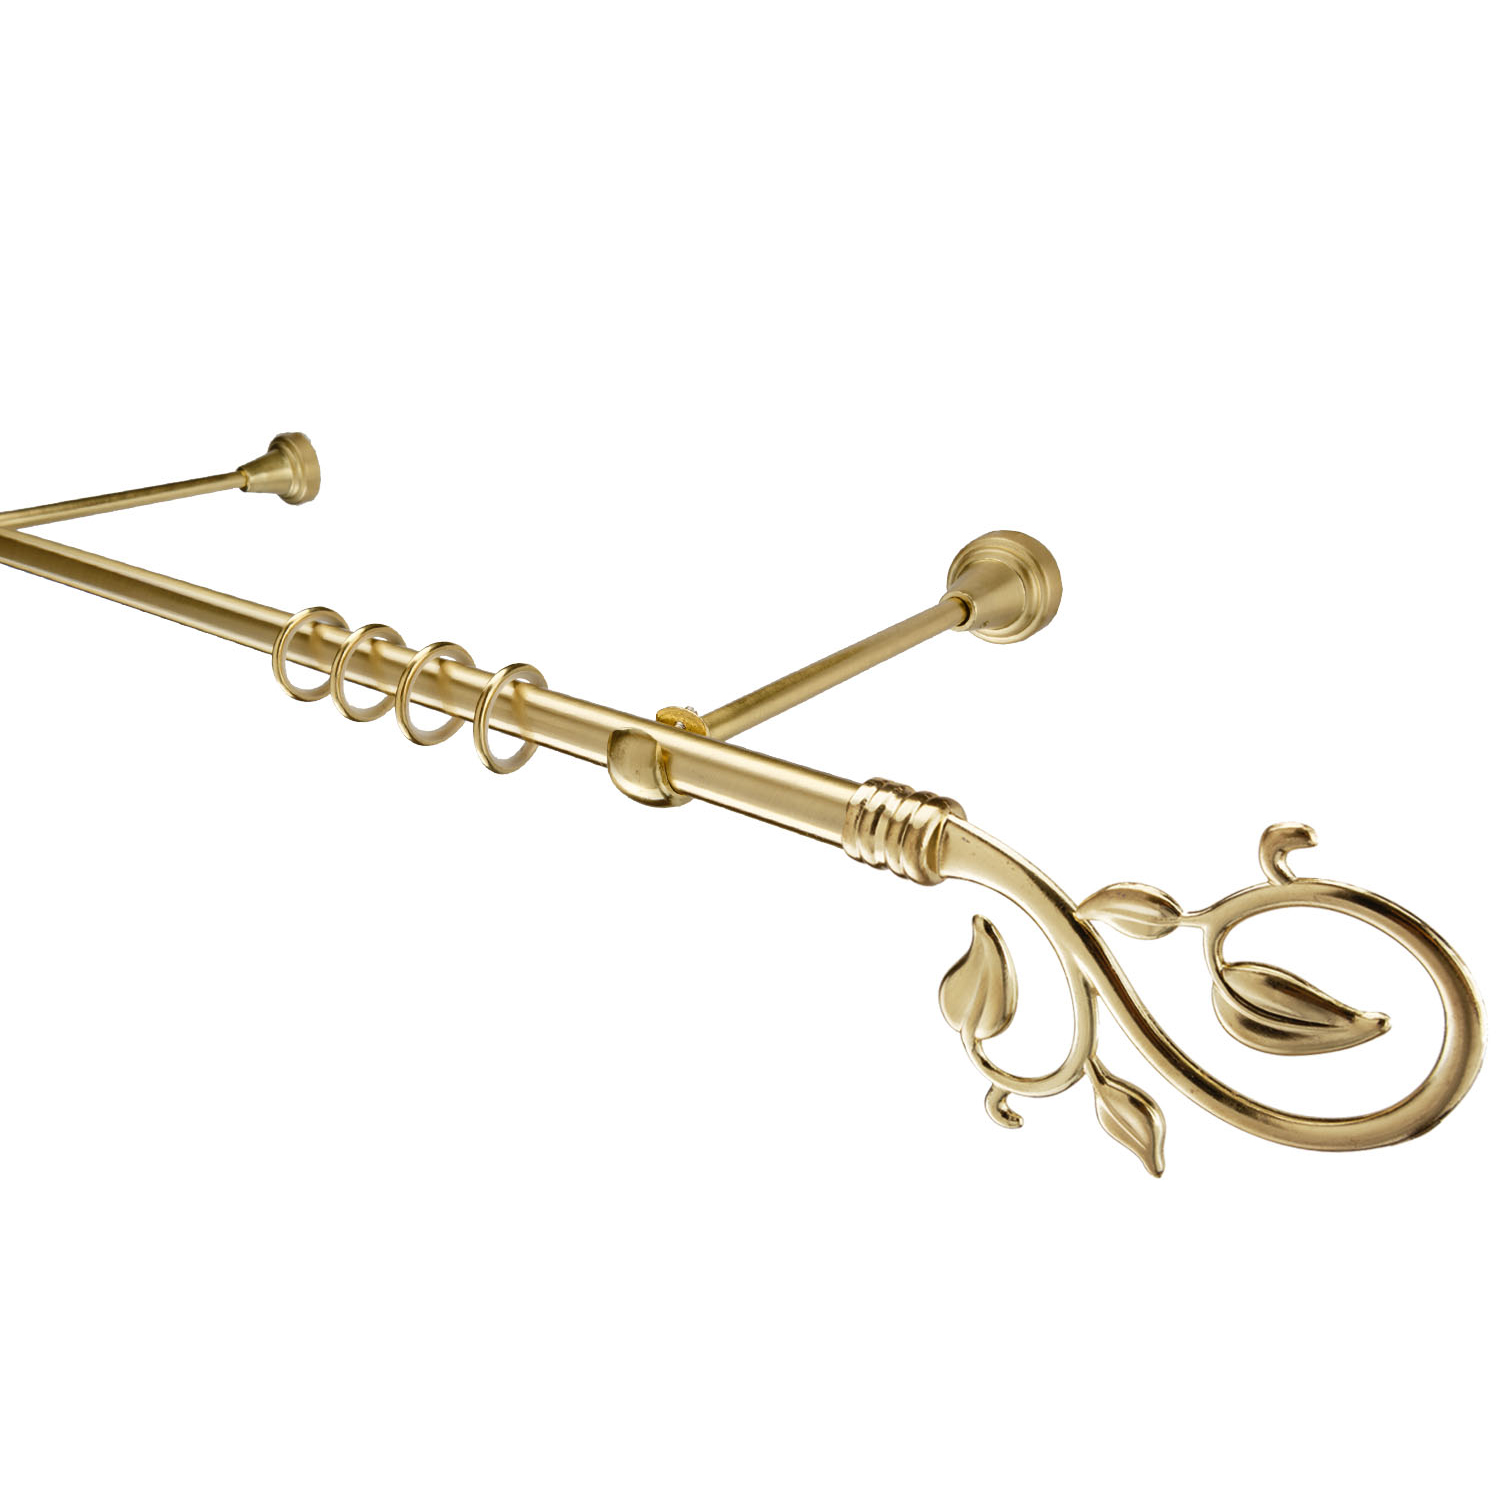 Металлический карниз для штор Амели, однорядный 16 мм, золото, гладкая штанга, длина 240 см - фото Wikidecor.ru